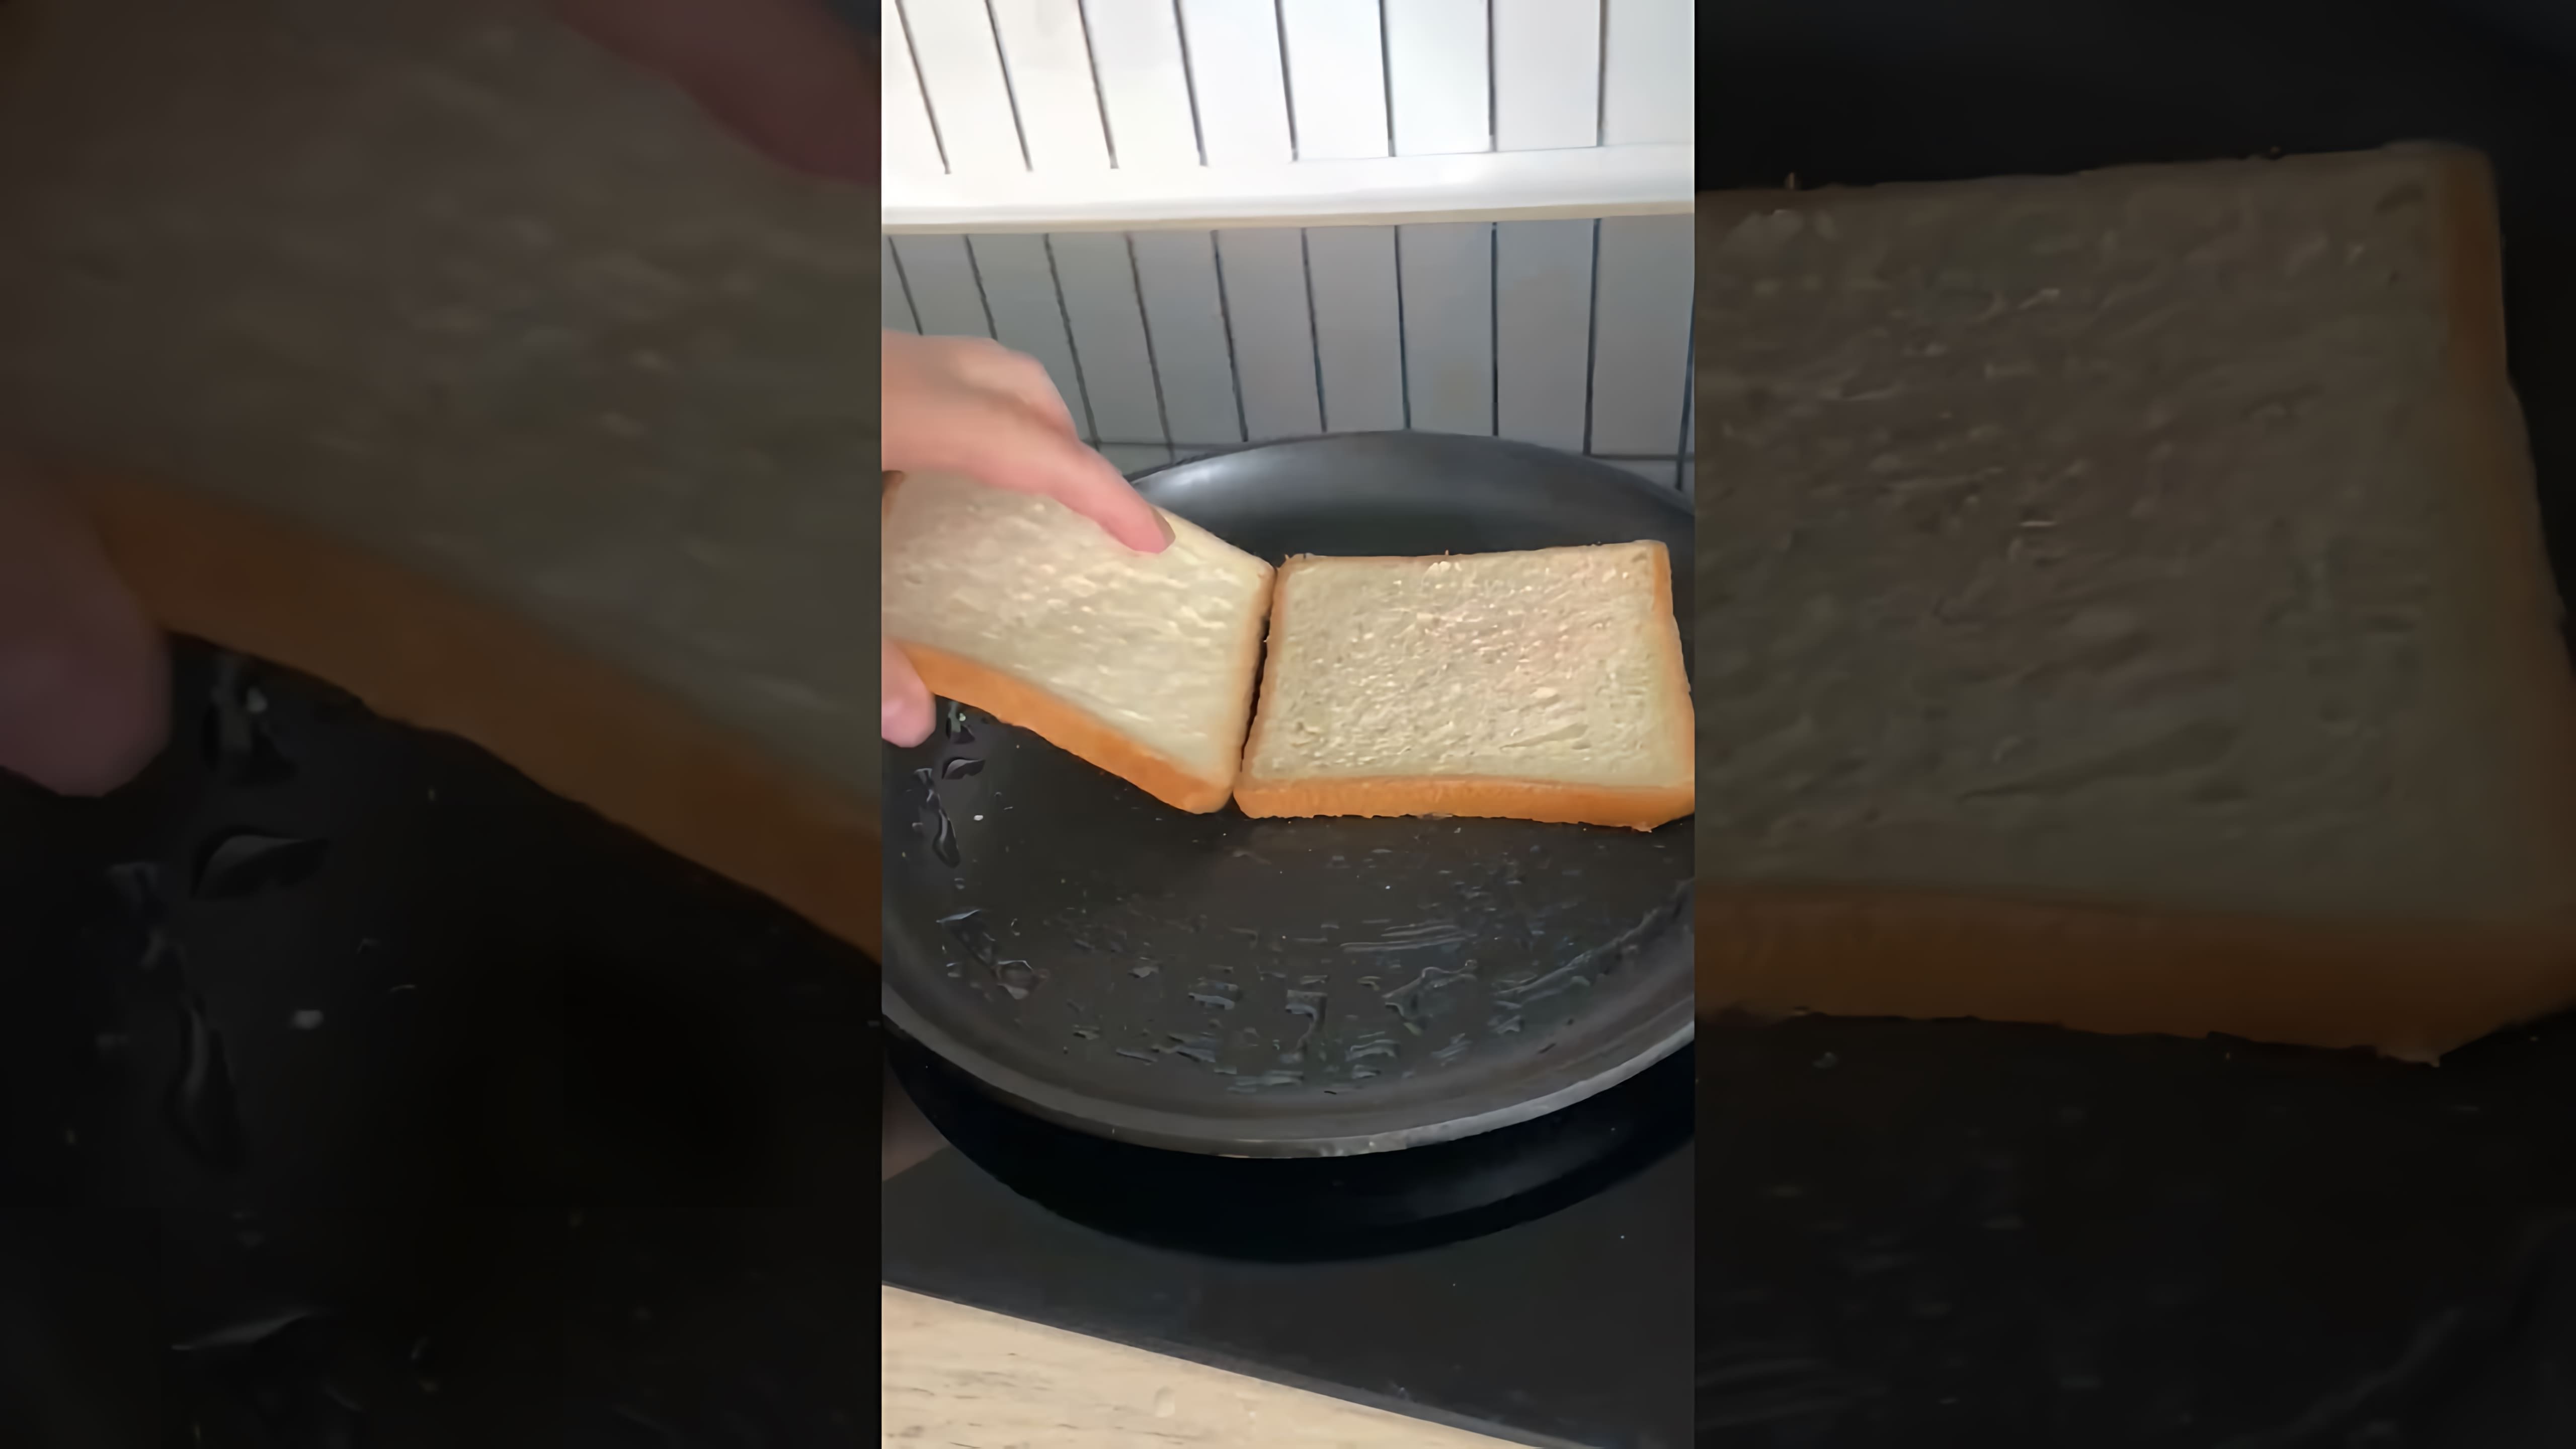 В этом видео демонстрируется рецепт приготовления клаб-сэндвича с тунцом